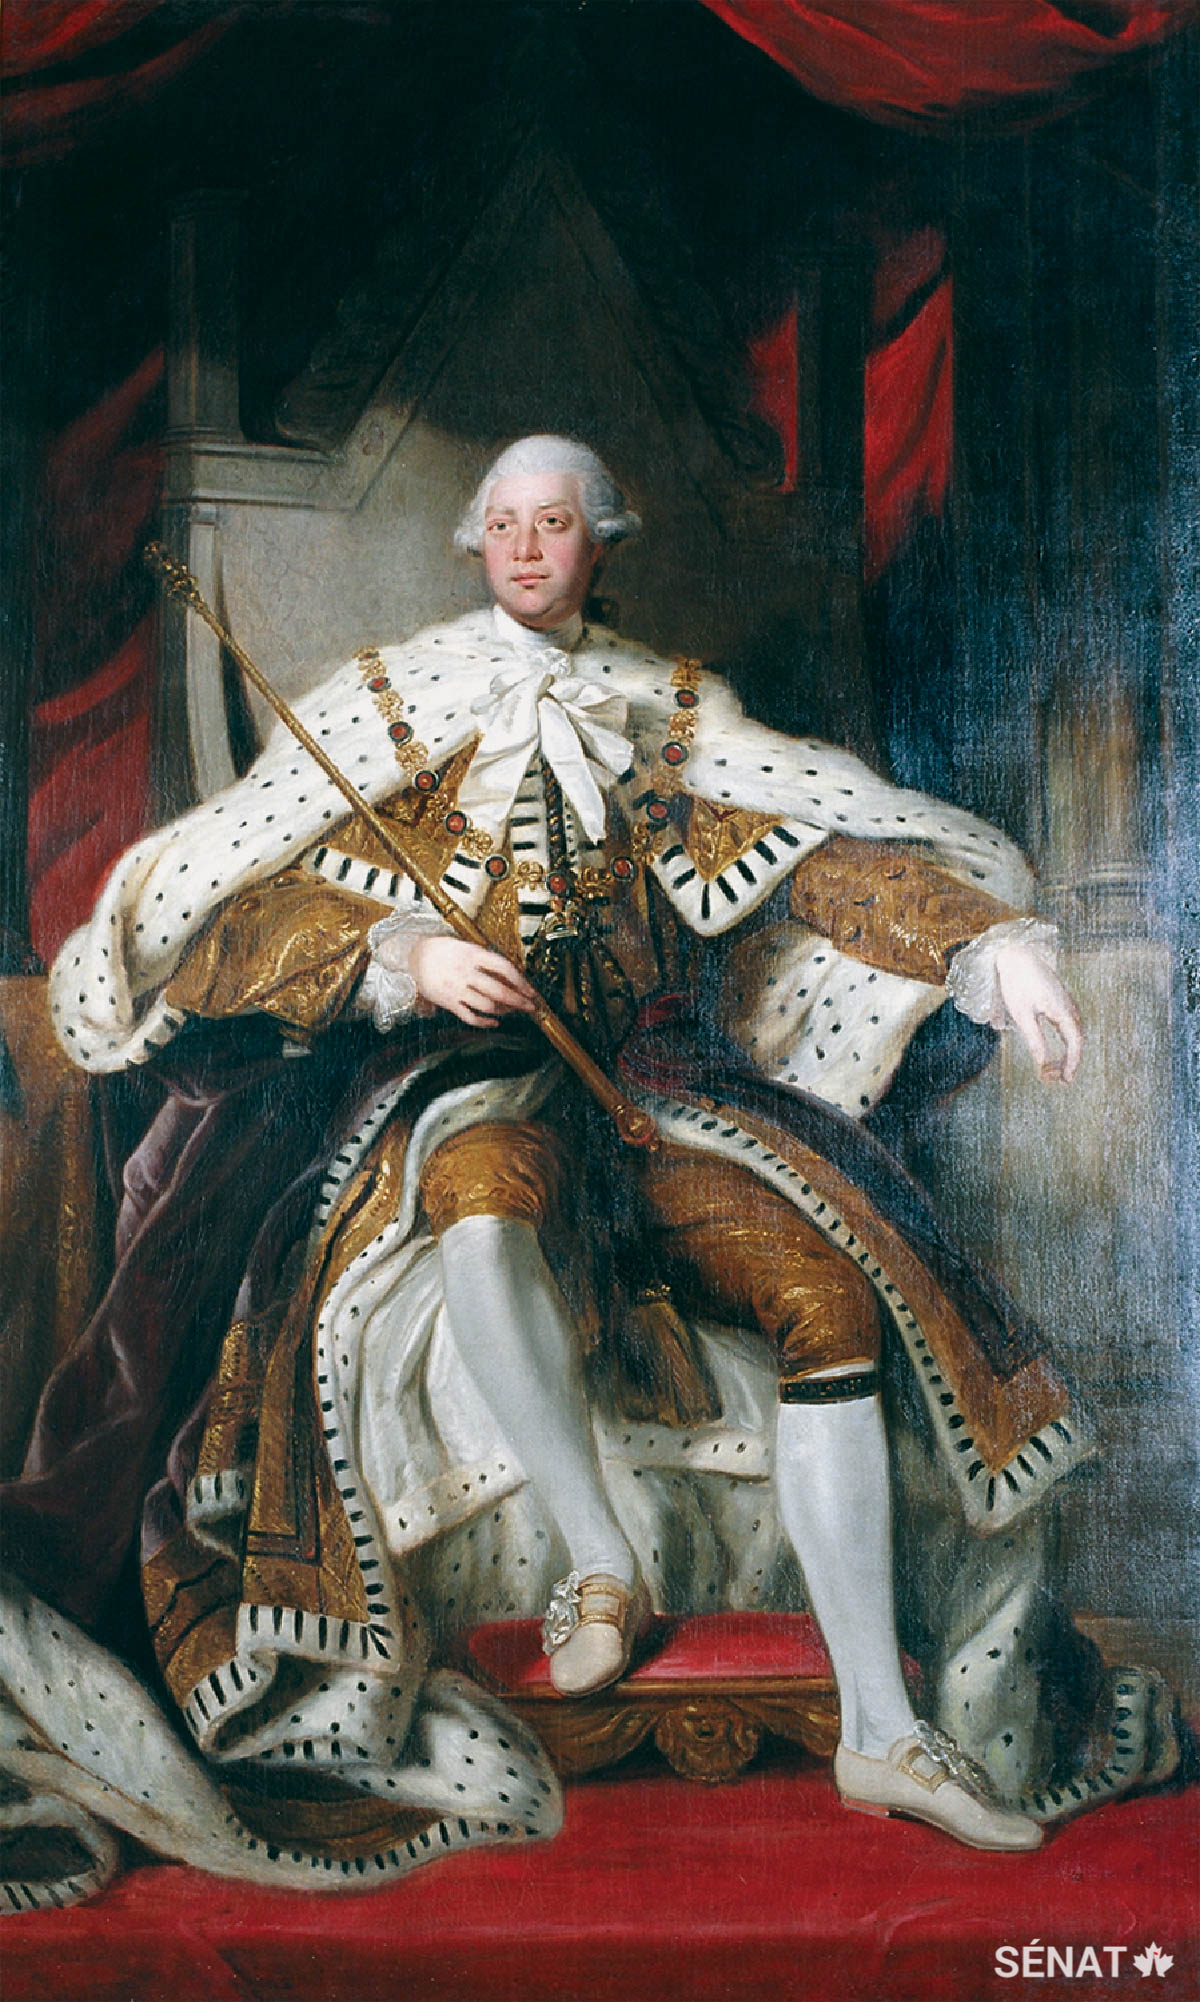 Le portrait de George III est accroché sur le mur sud du foyer. George entretenait une relation plutôt conflictuelle avec son portraitiste officiel, Joshua Reynolds. En dépit de leurs différences personnelles, Reynolds a représenté le roi avec toute la grandeur et l’étoffe d’un monarque idéal du siècle des Lumières.